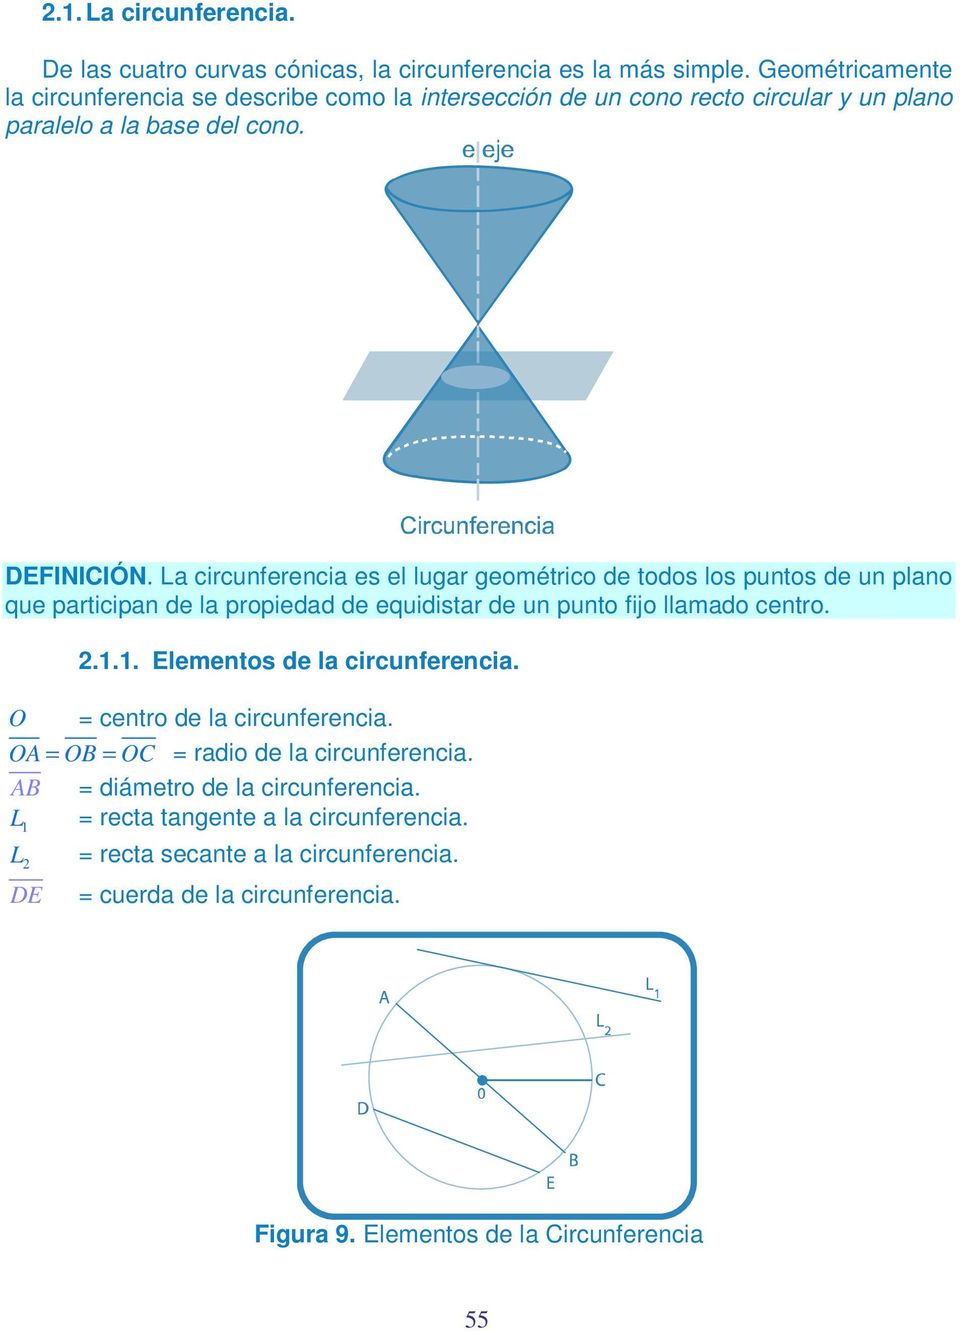 La circunferencia es el lugar geométrico de todos los puntos de un plano que participan de la propiedad de equidistar de un punto fijo llamado centro..1.